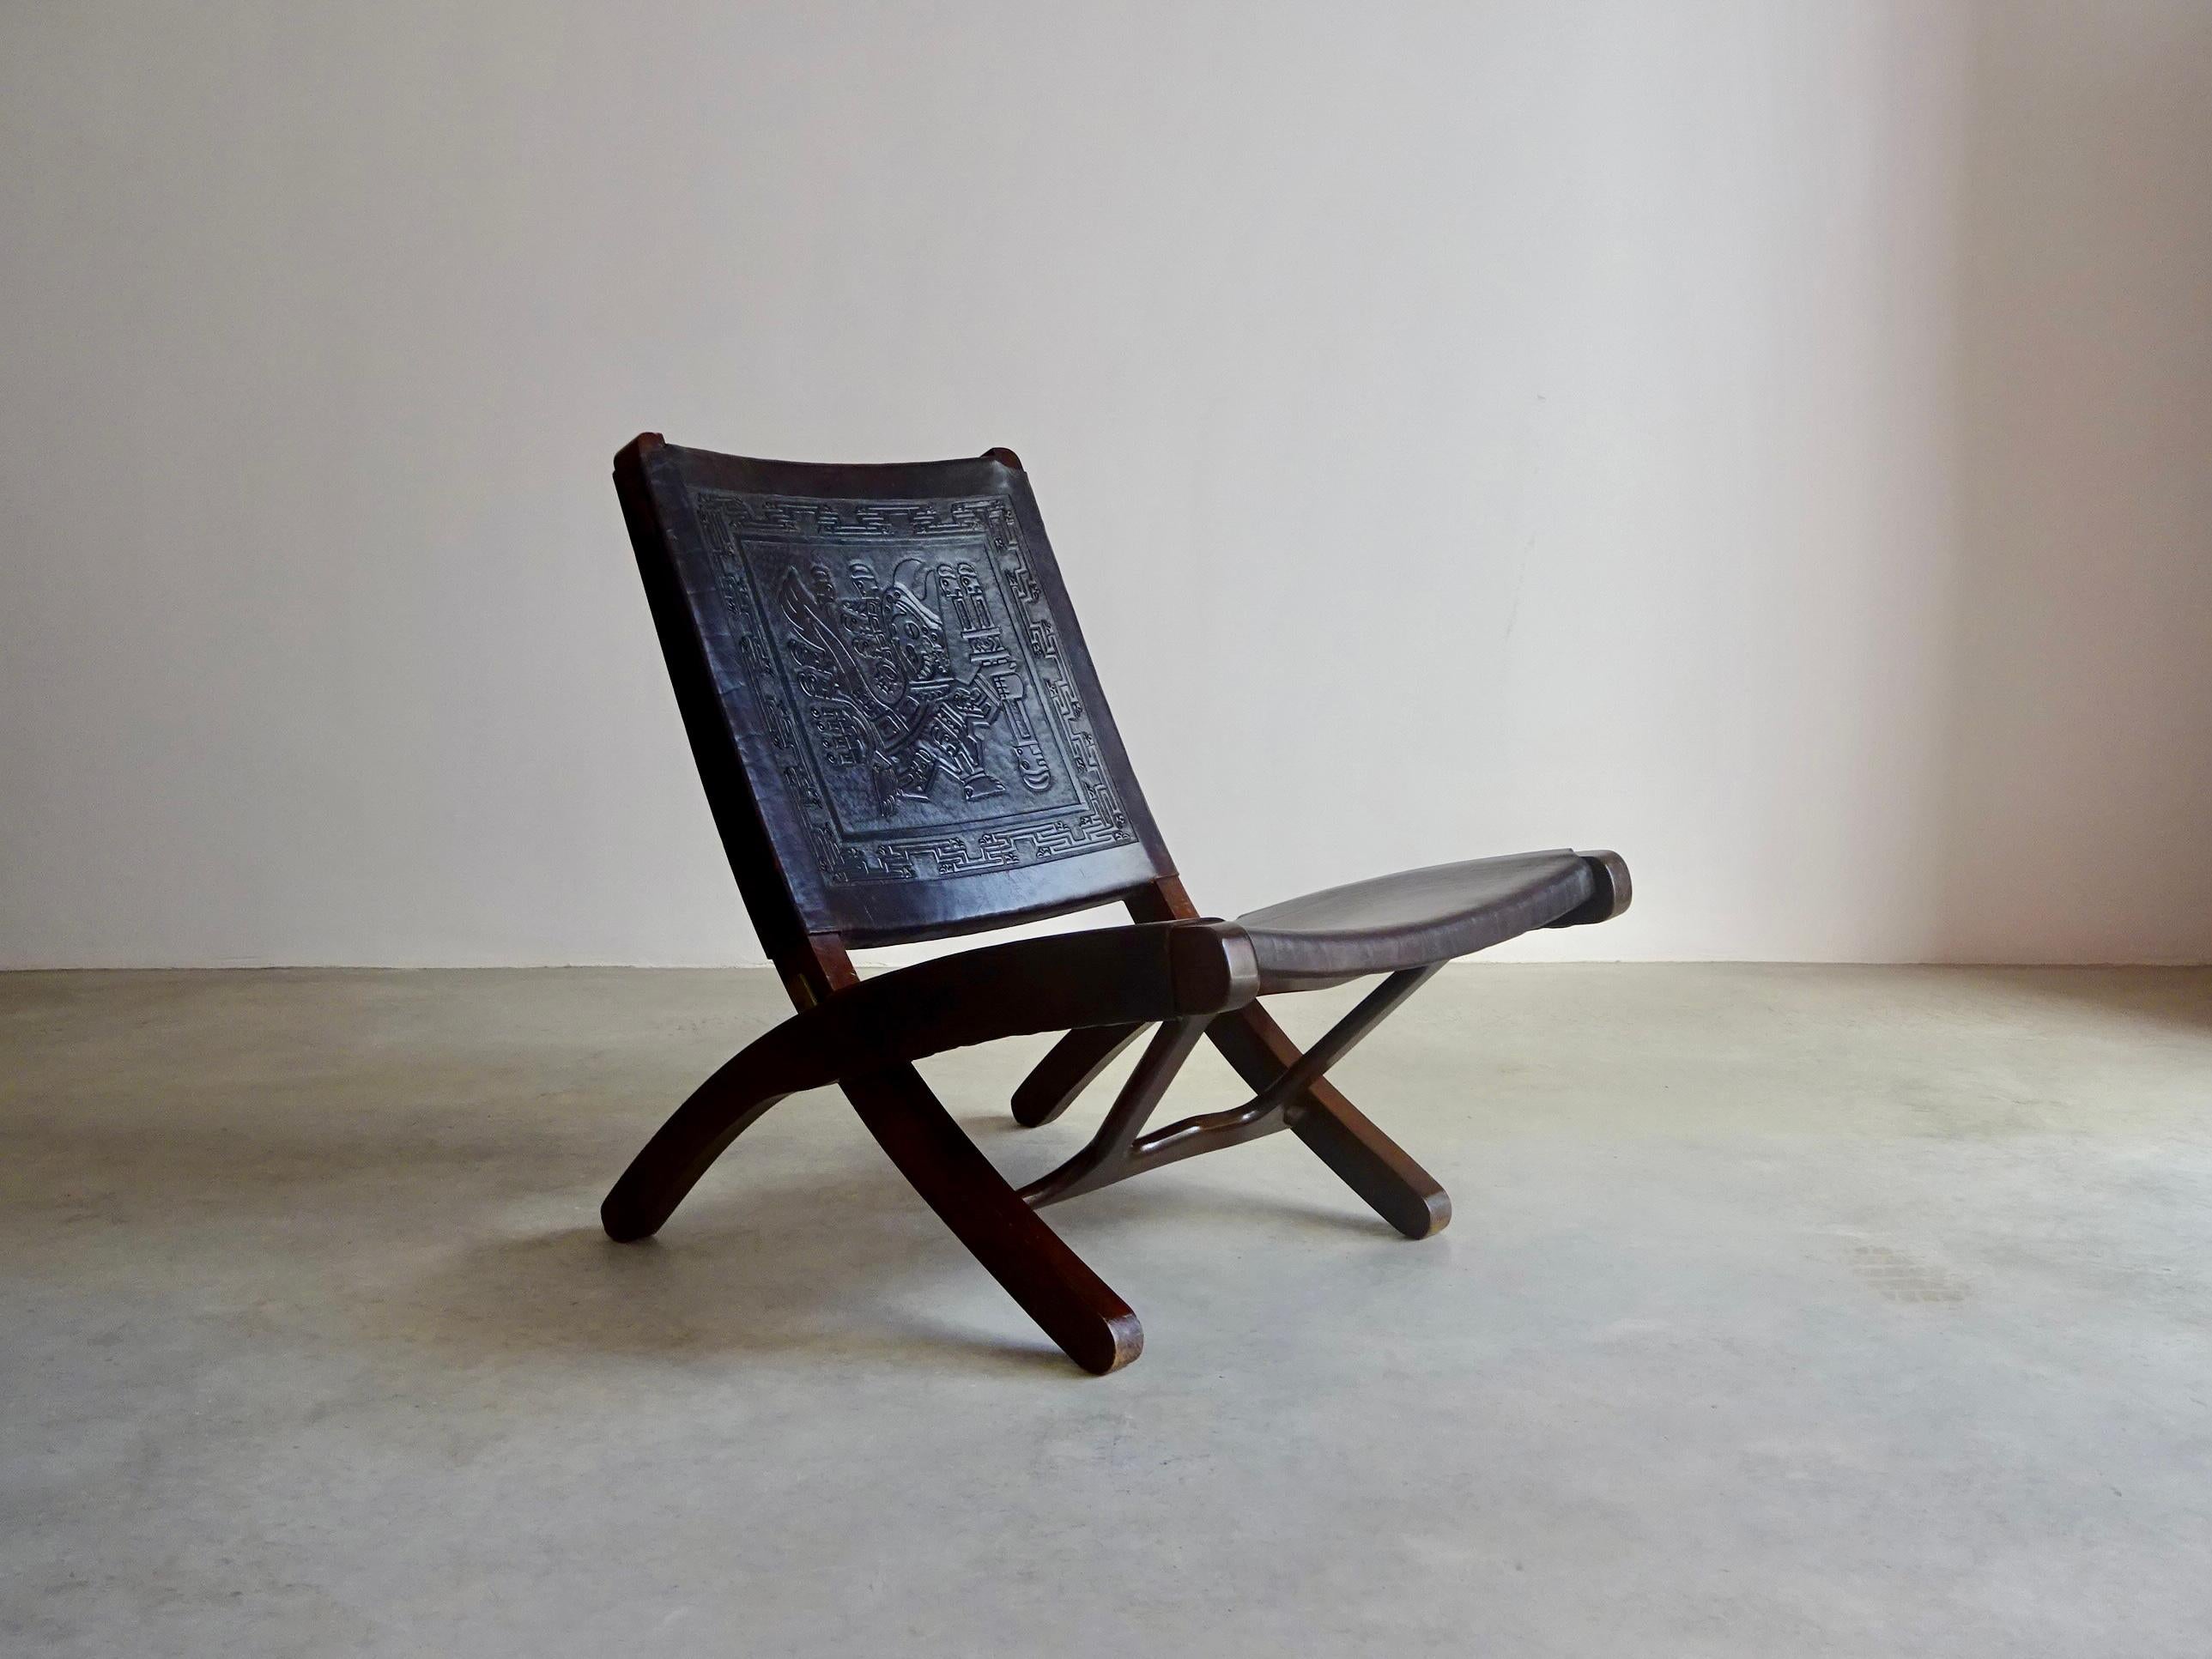 Chaise pliante conçue dans les années 60 par Ángel Pazmiño pour Muebles de Estilo (Équateur).
La structure est en bois massif de méranti et en cuir brun épais. Le cuir gaufré du dossier présente des motifs d'inspiration Pre-Columbian. Charnières en